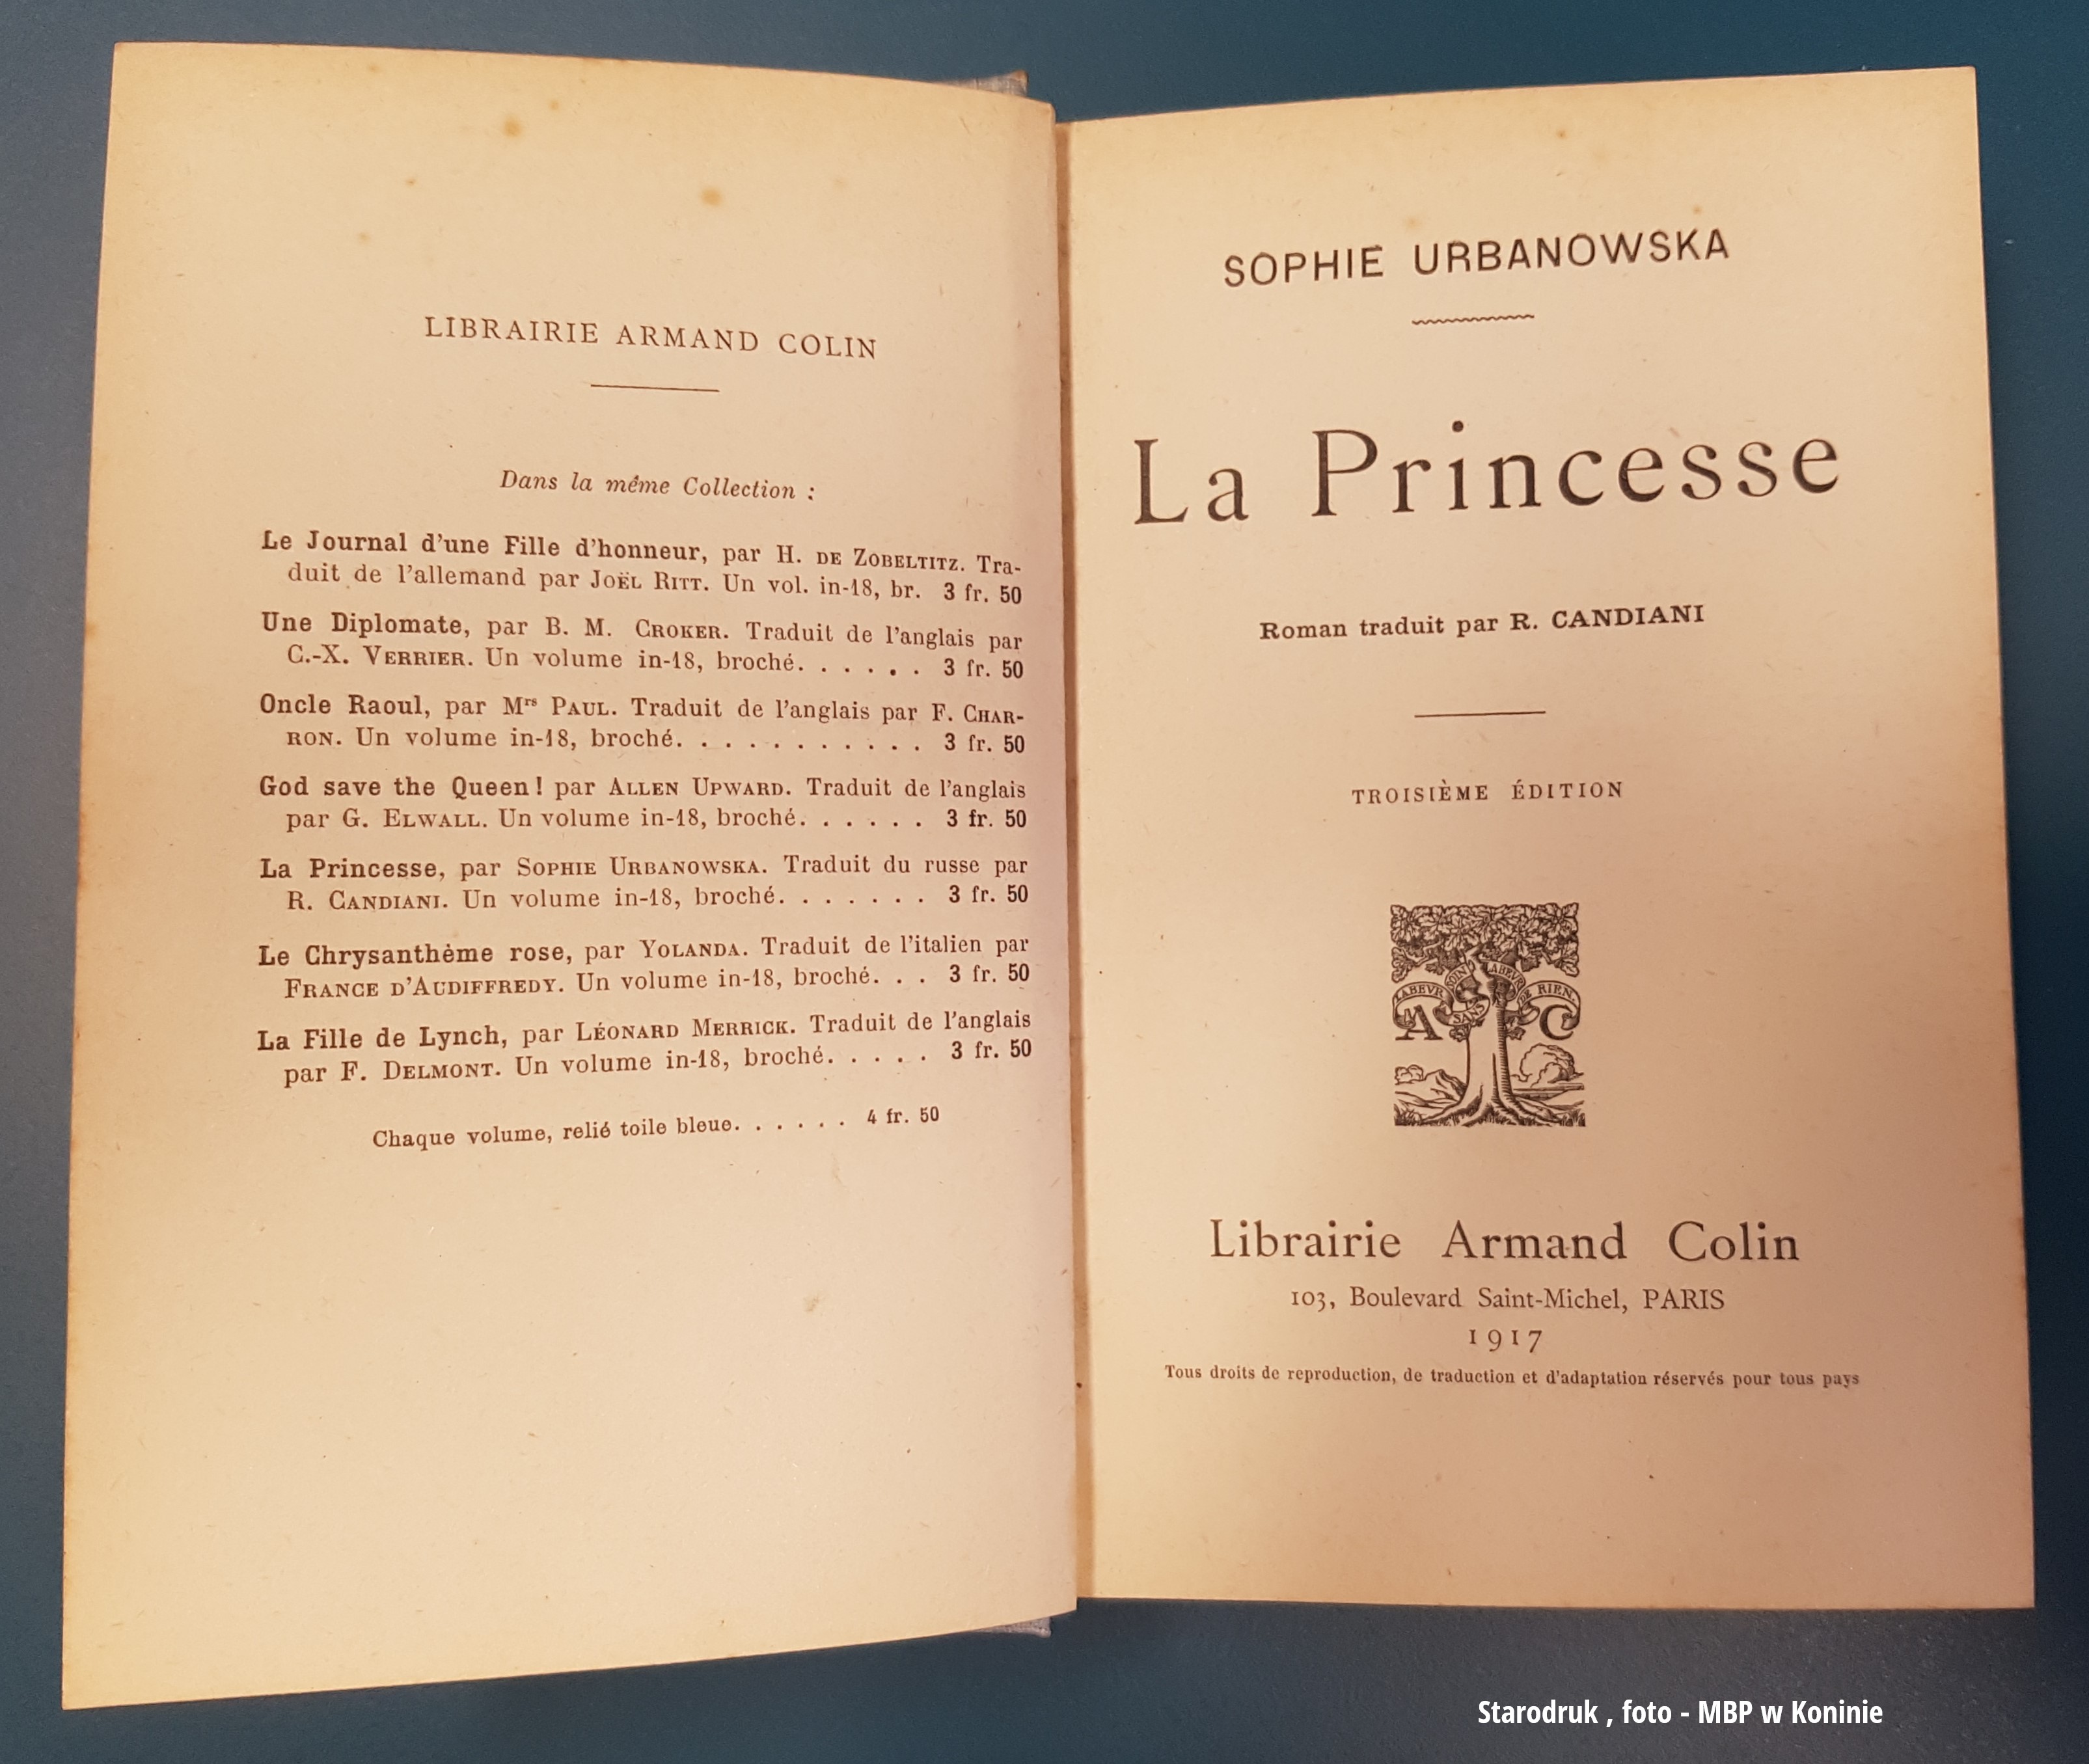 Otwarta książka Zofii Urbanowskiej wydana w 1917 roku w Paryżu